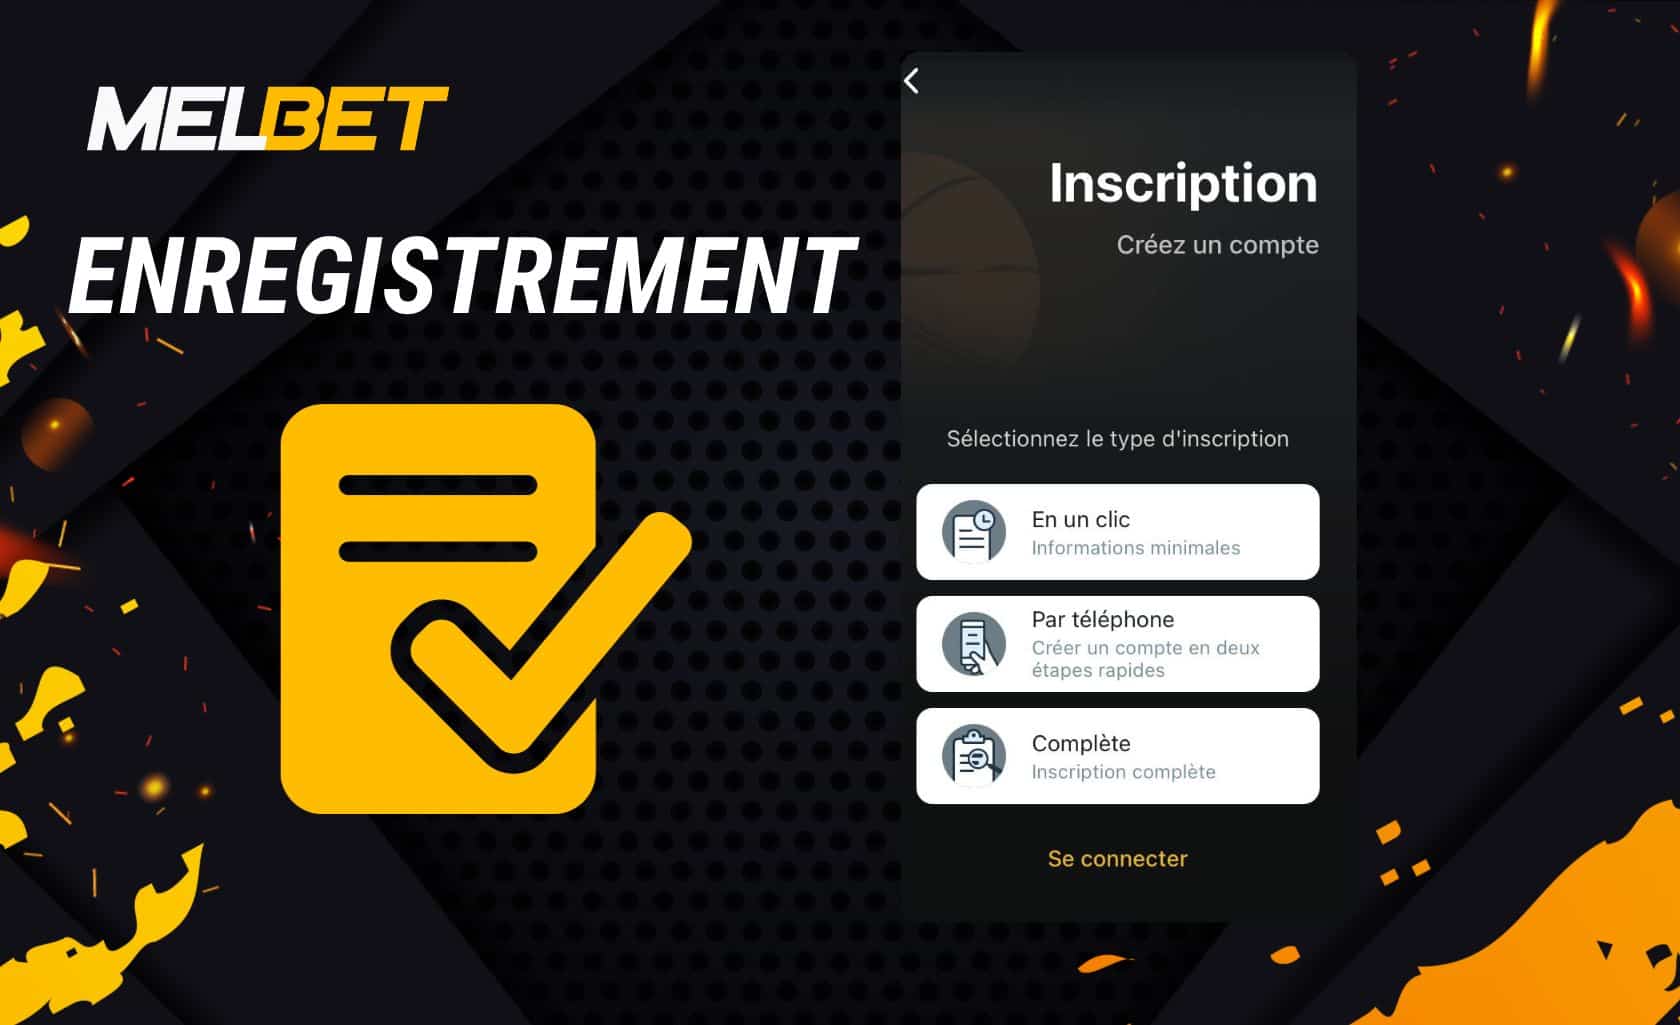 Enregistrement et vérification du compte via l'application mobile Melbet Côte d'Ivoire